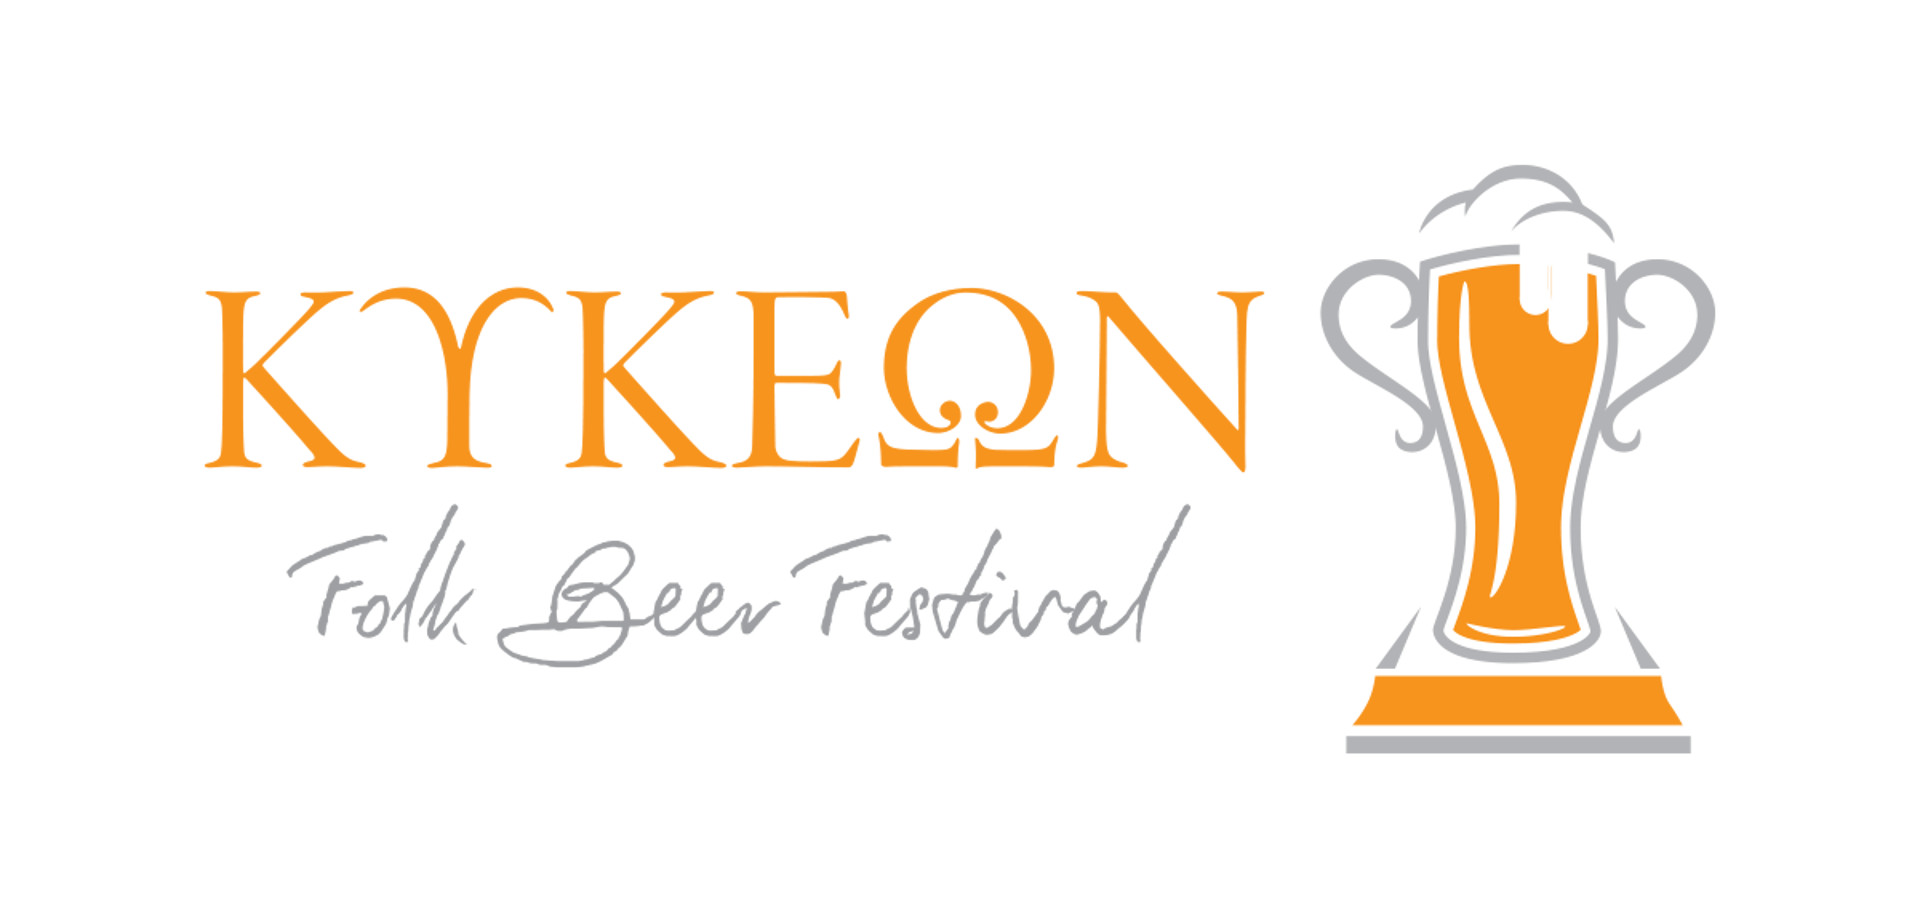 Kykeon folk beer festival